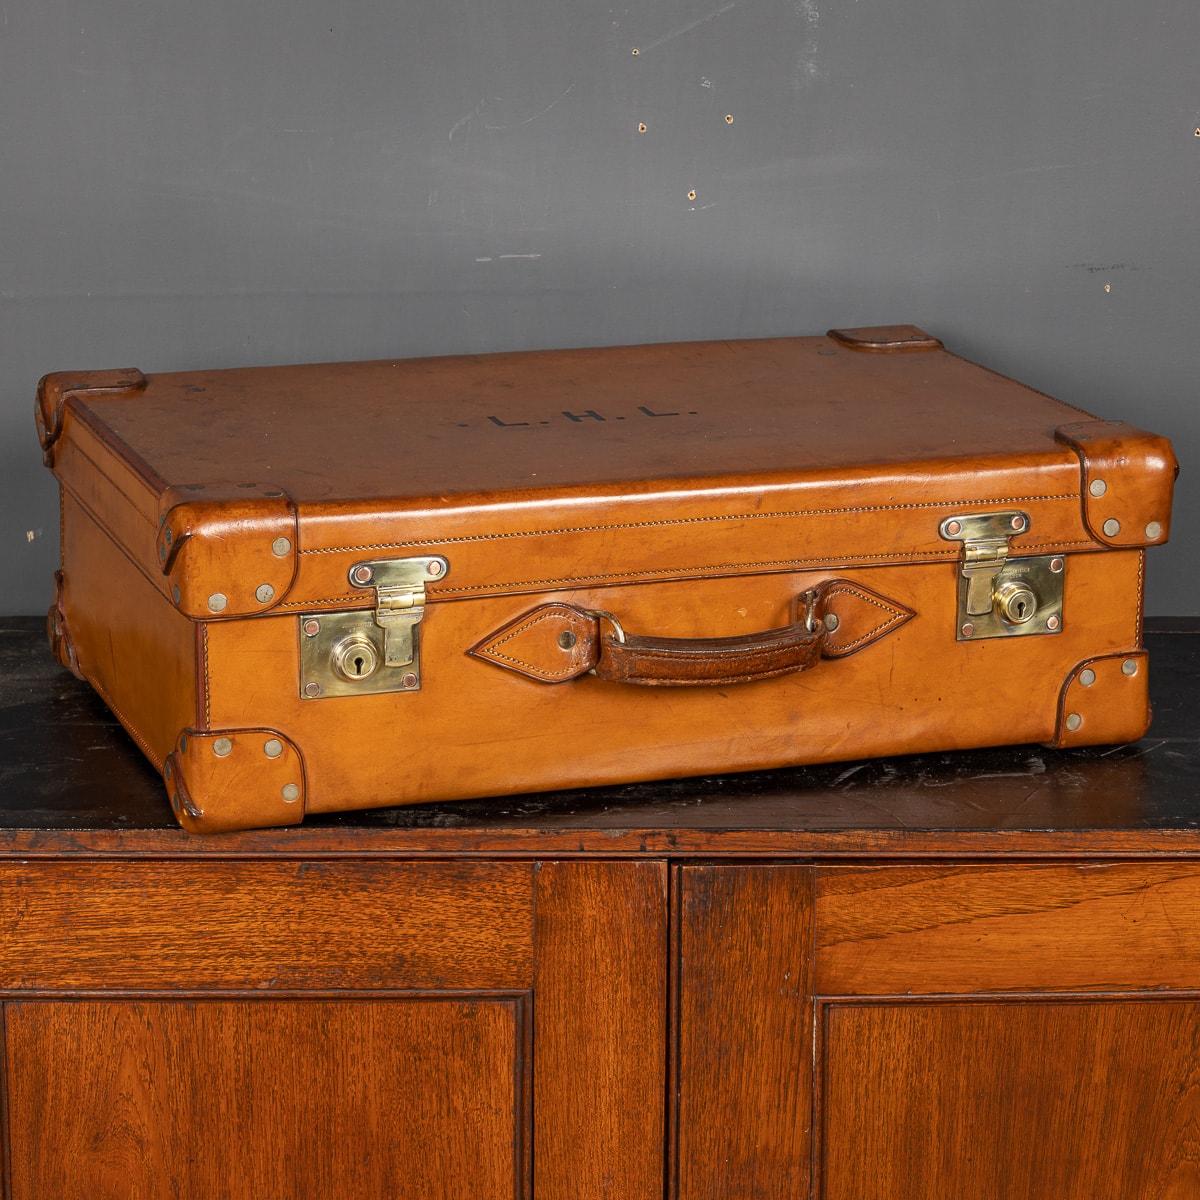 Antiker britischer Koffer aus dem frühen 20. Jahrhundert mit Zaumlederbezug. Das Leder zeigt Abnutzungserscheinungen, ist aber noch geschmeidig, mit Messingbeschlägen versehen und versprüht Charme und Eleganz. Ein wirklich großartiges Stück für